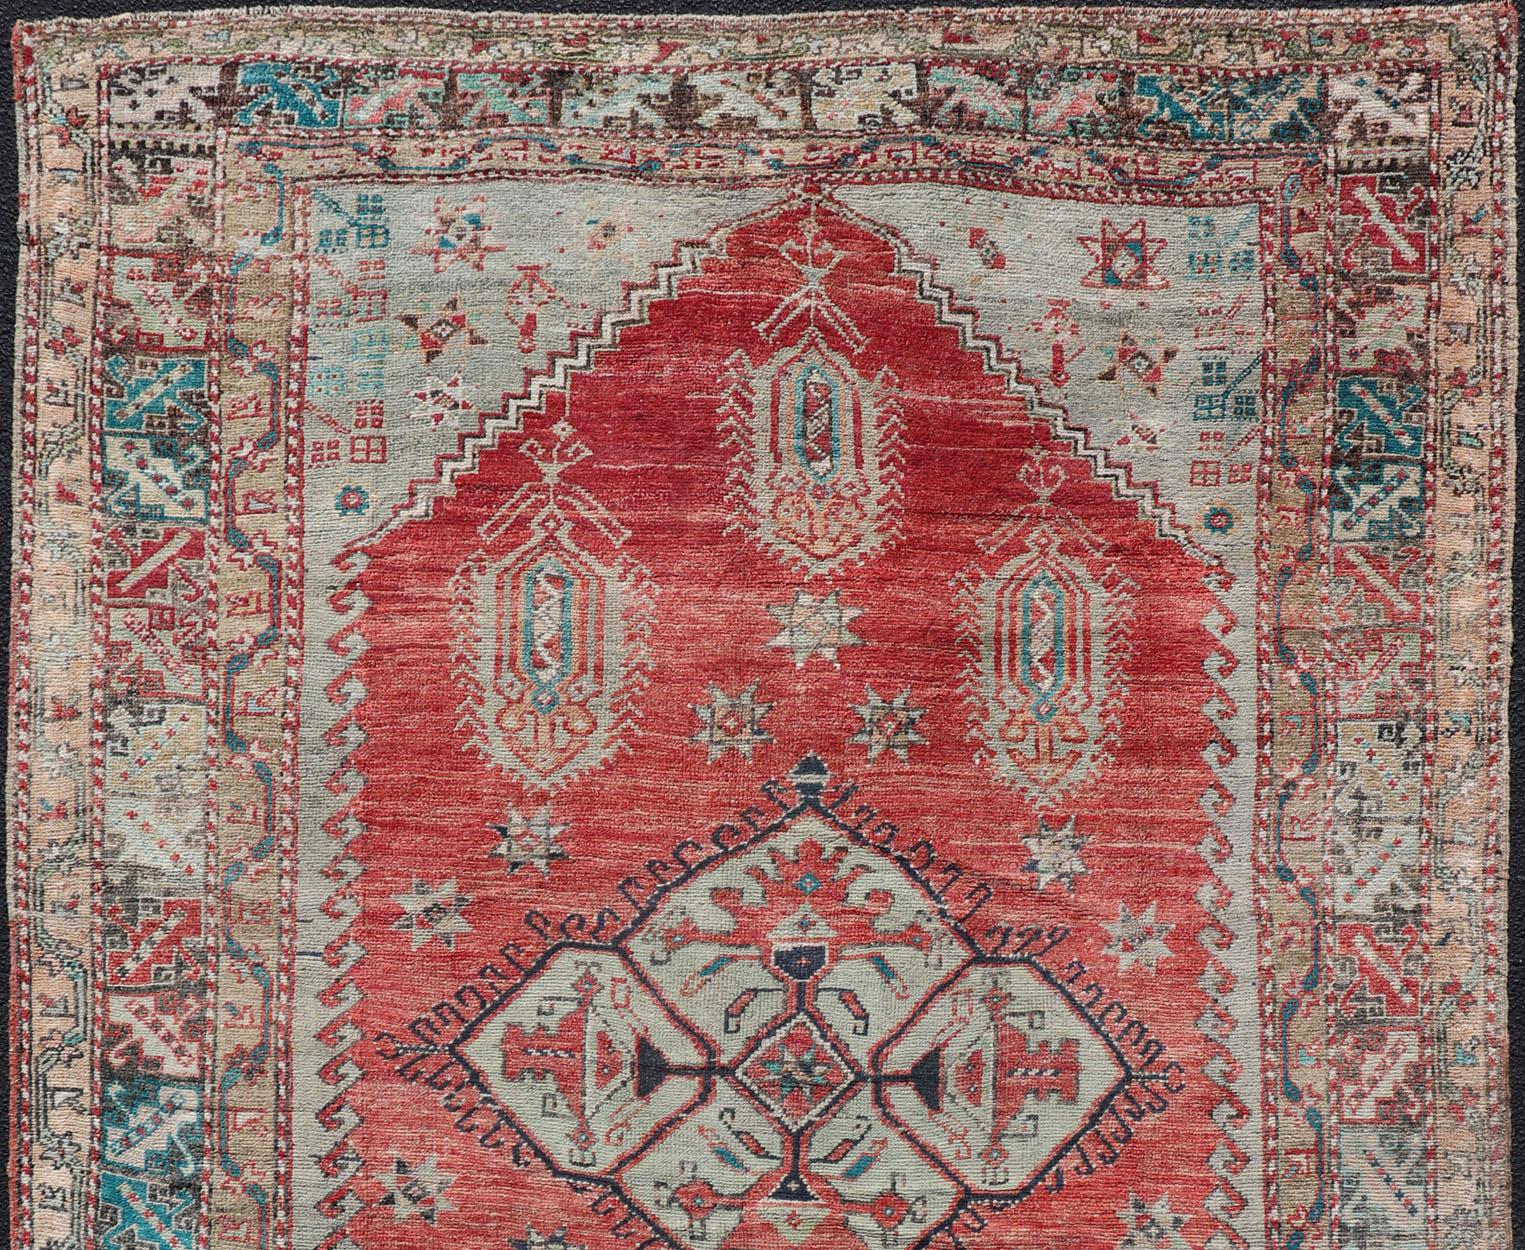 Vibrant Medallion design Turkish antique rug, tapis EN-179973, pays d'origine / type : Turquie / Oushak, circa 1920

Cet ancien tapis turc oushak présente un grand médaillon. L'ensemble de la pièce est entouré d'une bordure à plusieurs niveaux de